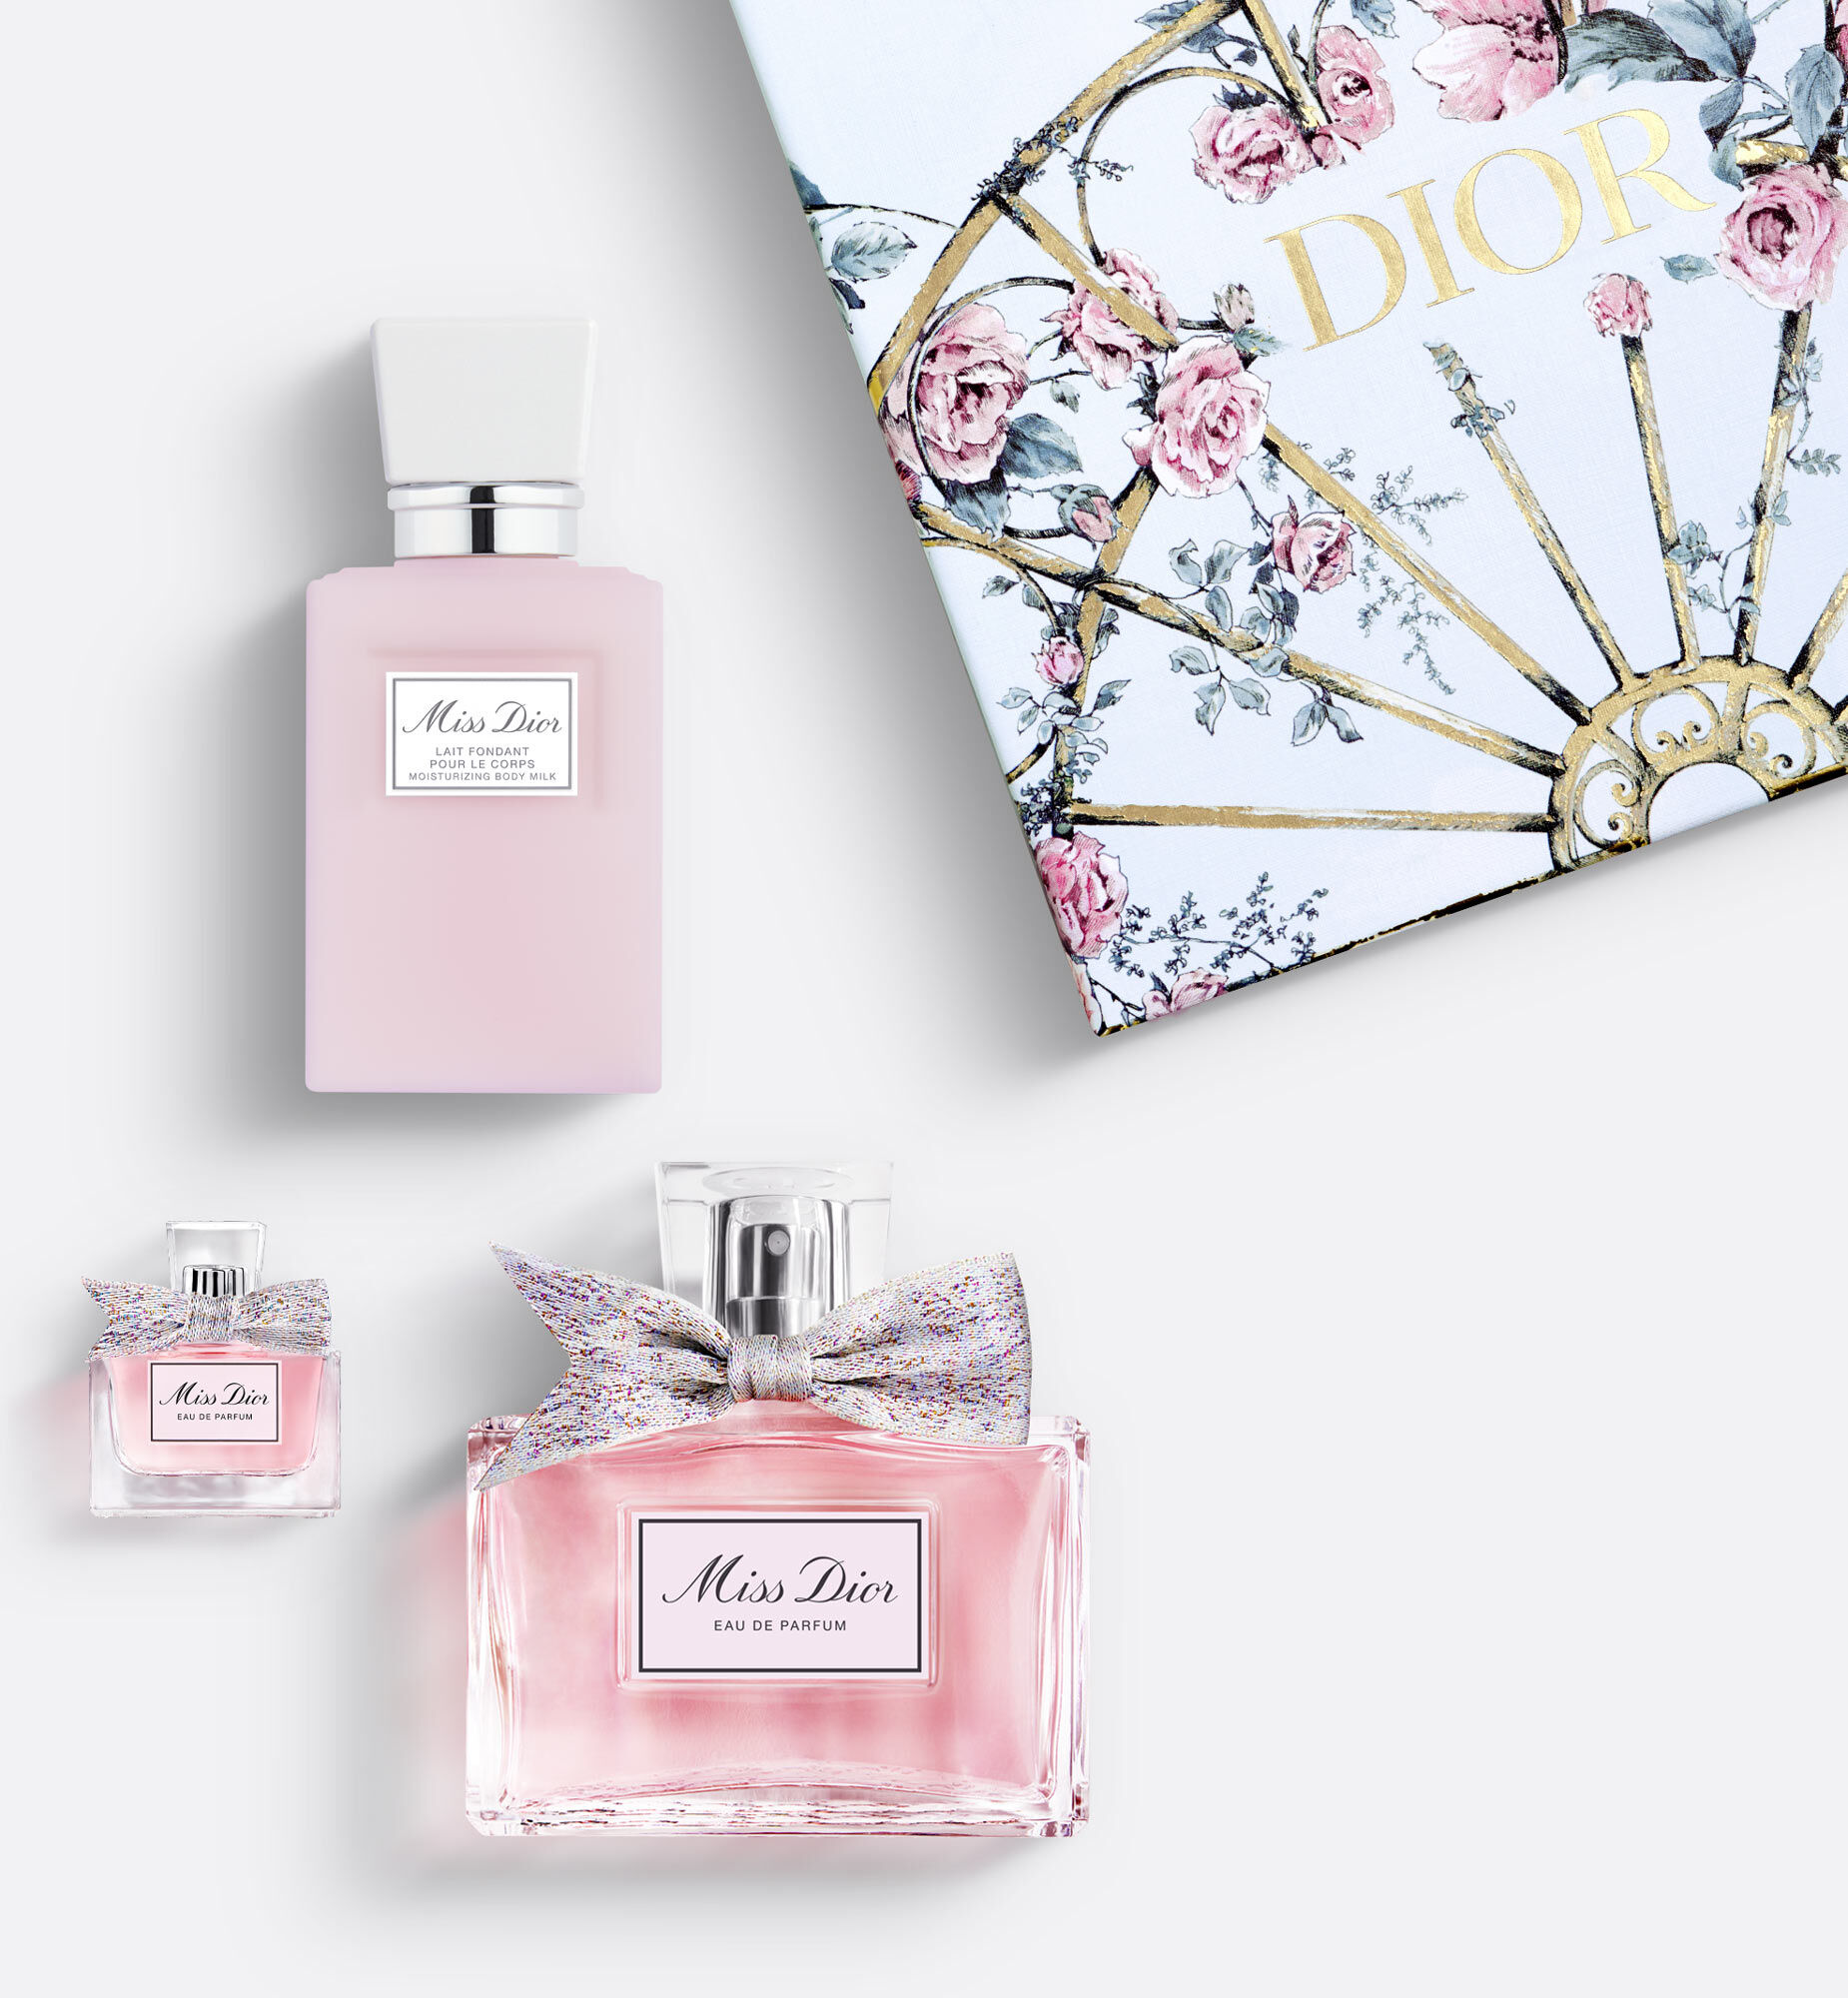 PHỤ KIỆN CHÍNH HÃNG  TÚI NỮ Dior Vip Gift Beauty Zipper Buckle Clutch Bag   7424195937